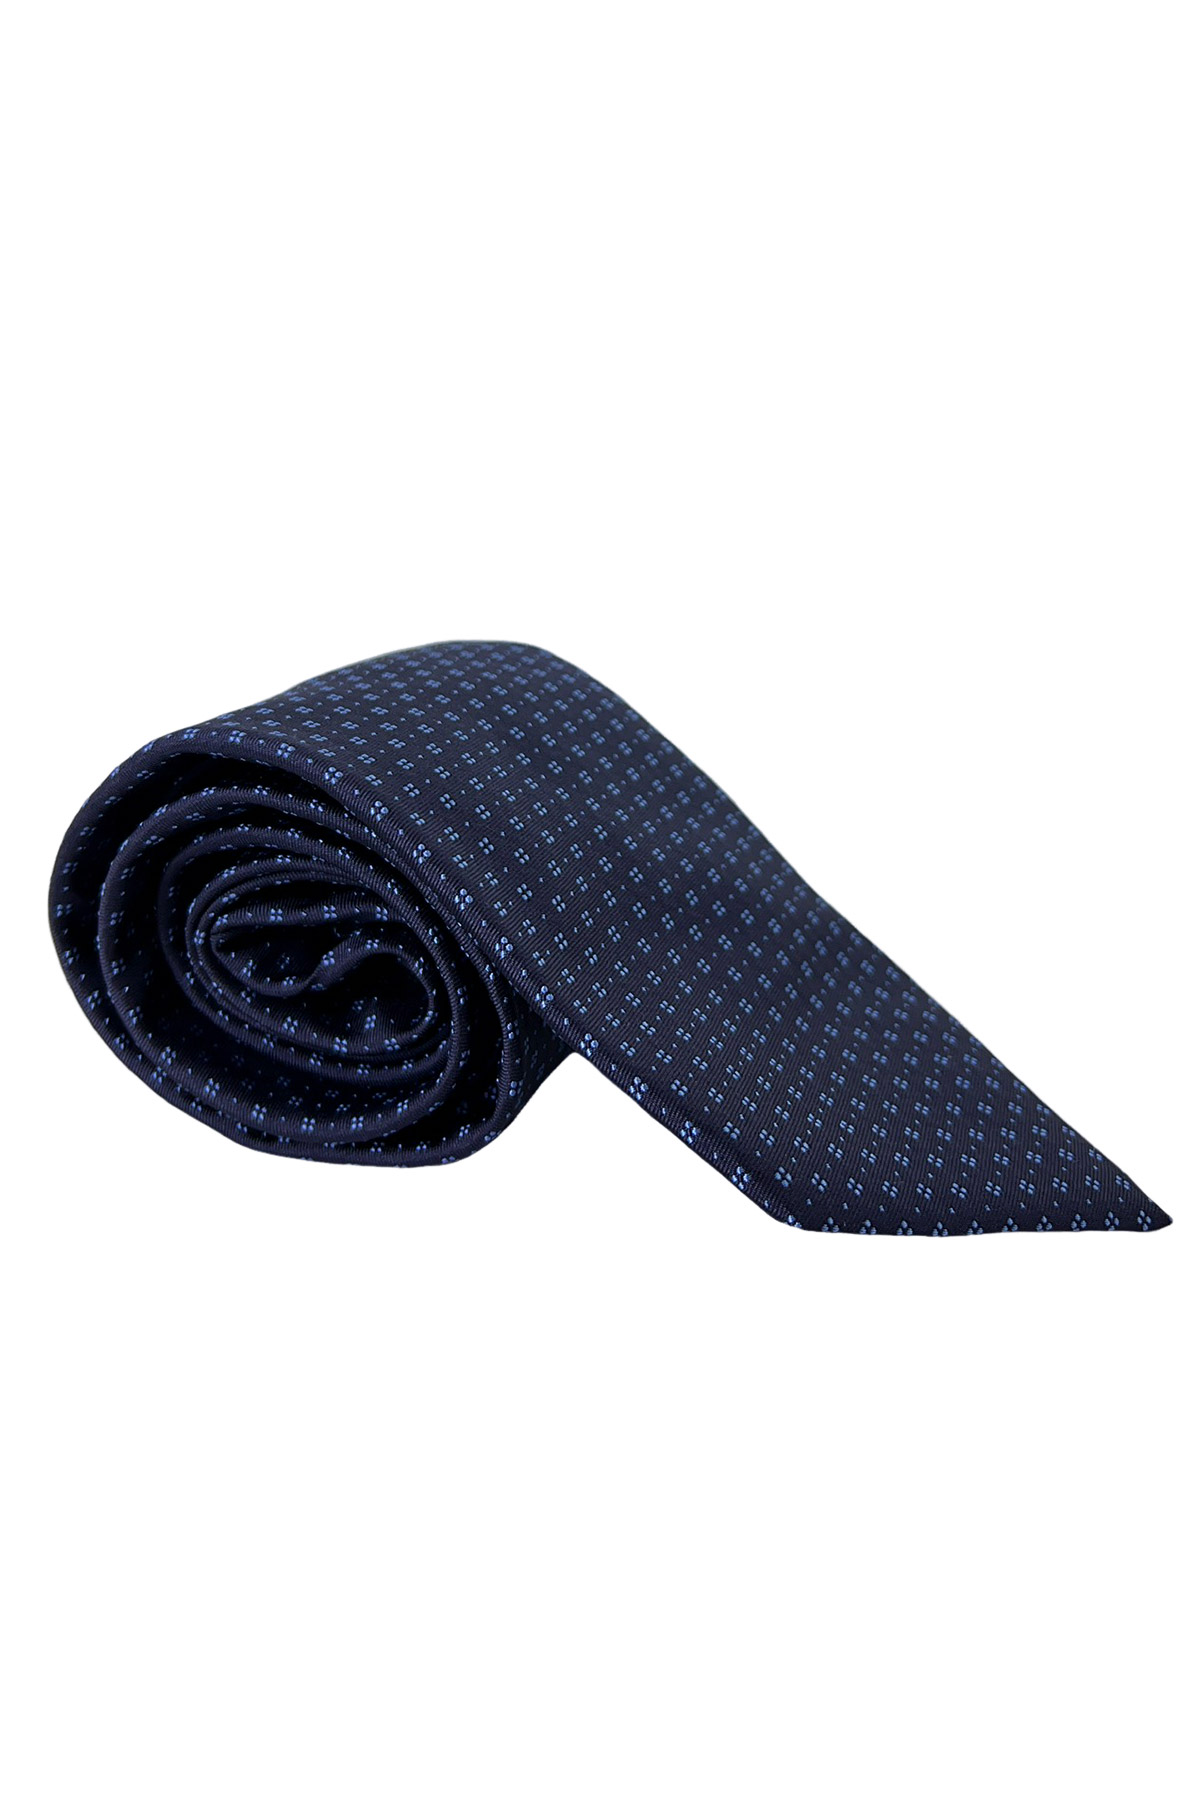 Cravatta uomo blu fantasia fiori celesti 9cm da cerimonia elegante pura seta